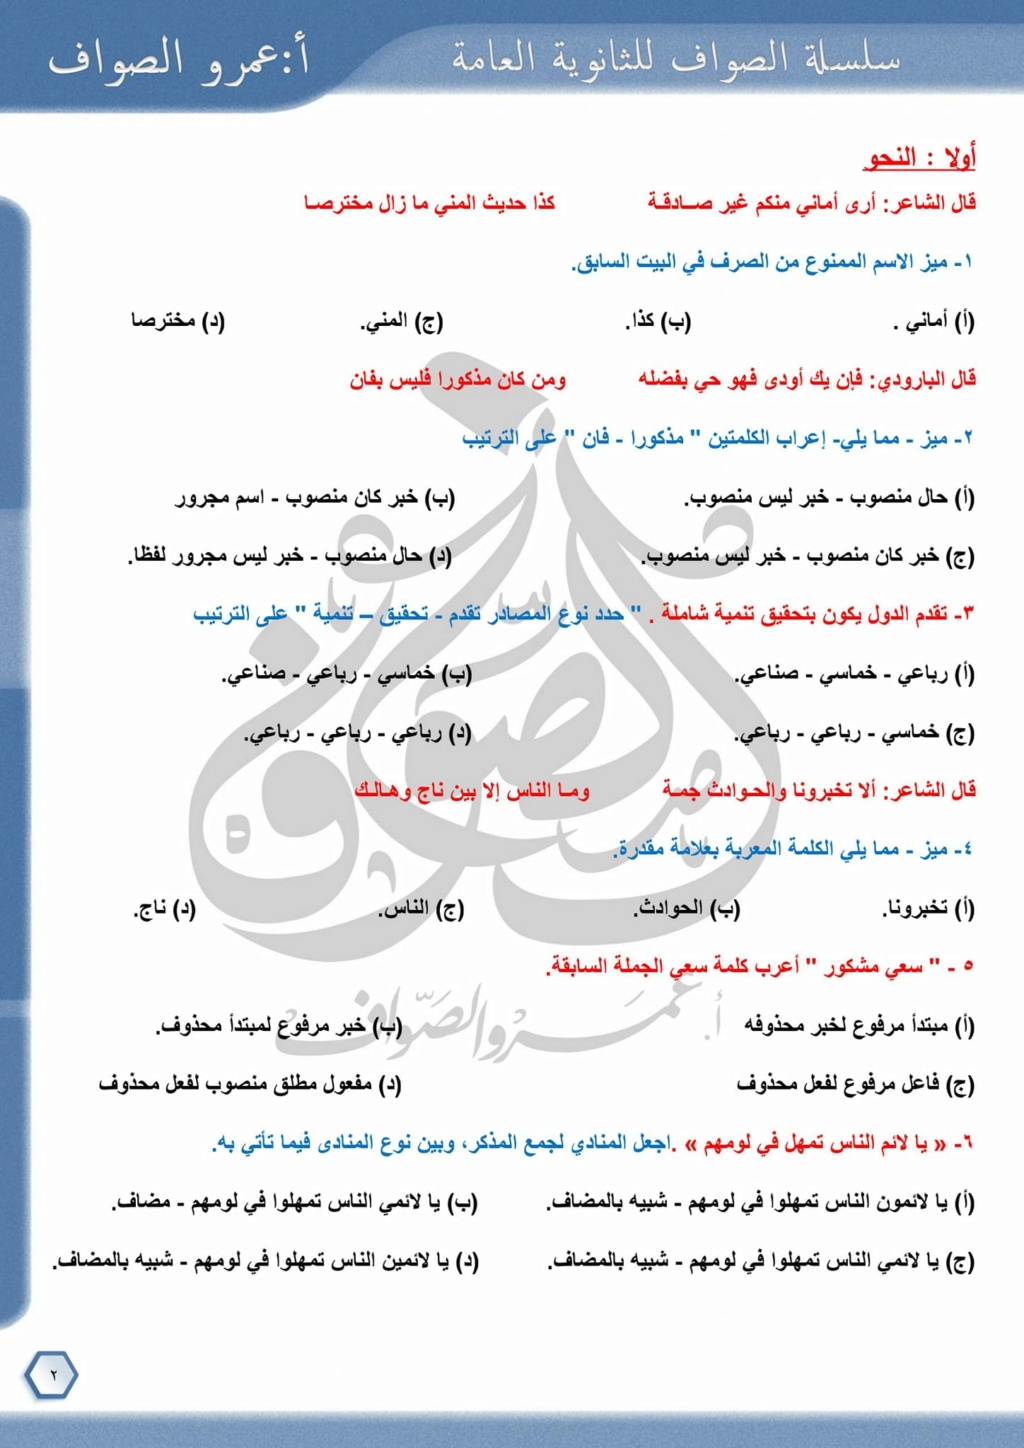 امتحان شامل في اللغة العربية للصف الثالث الثانوي ٢٠٢٣ بالإجابة عمرو الصواف 2401